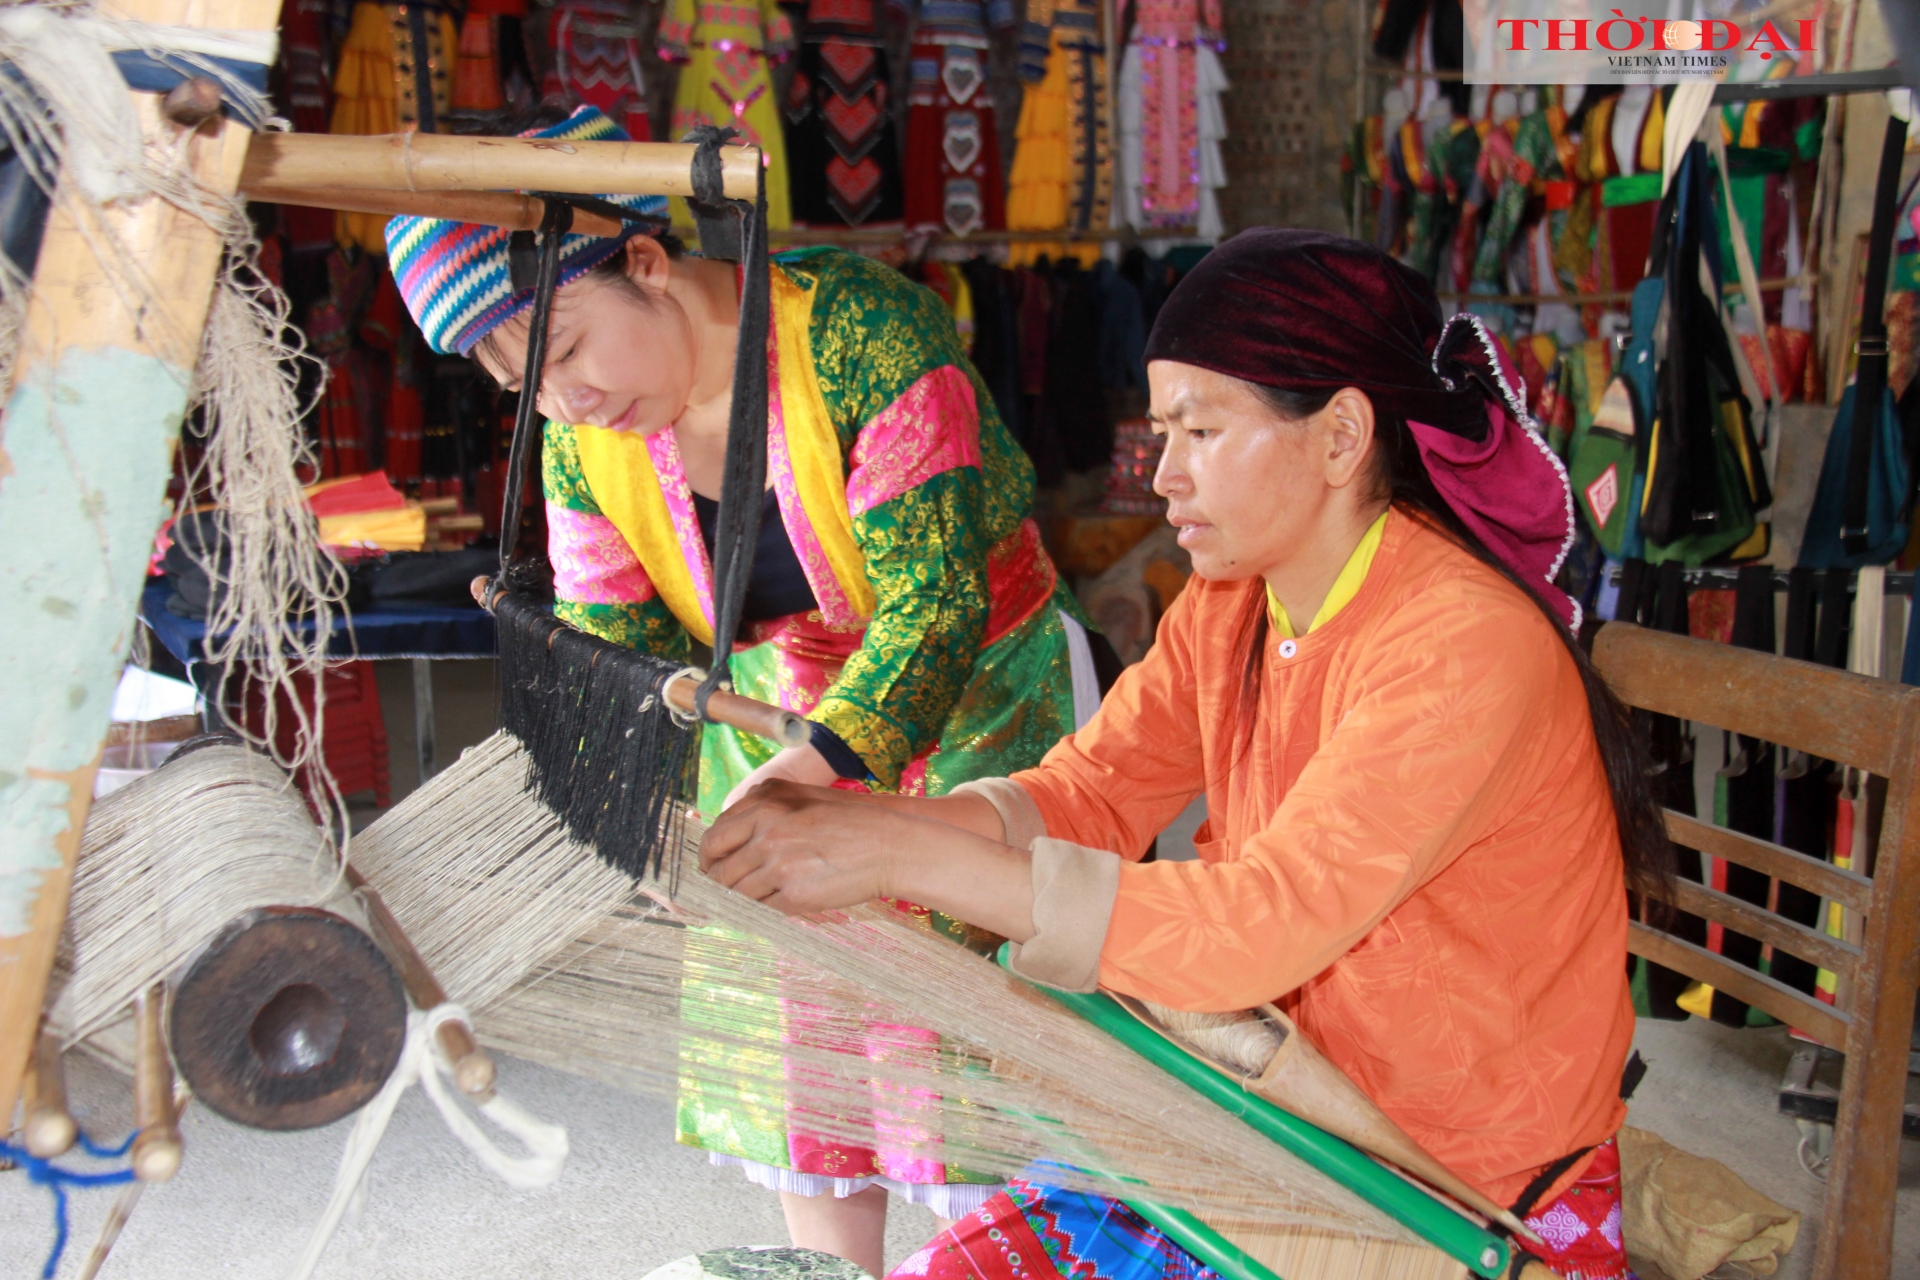 白亚麻合作社为许多处境困难的蒙族妇女创造了就业机会。